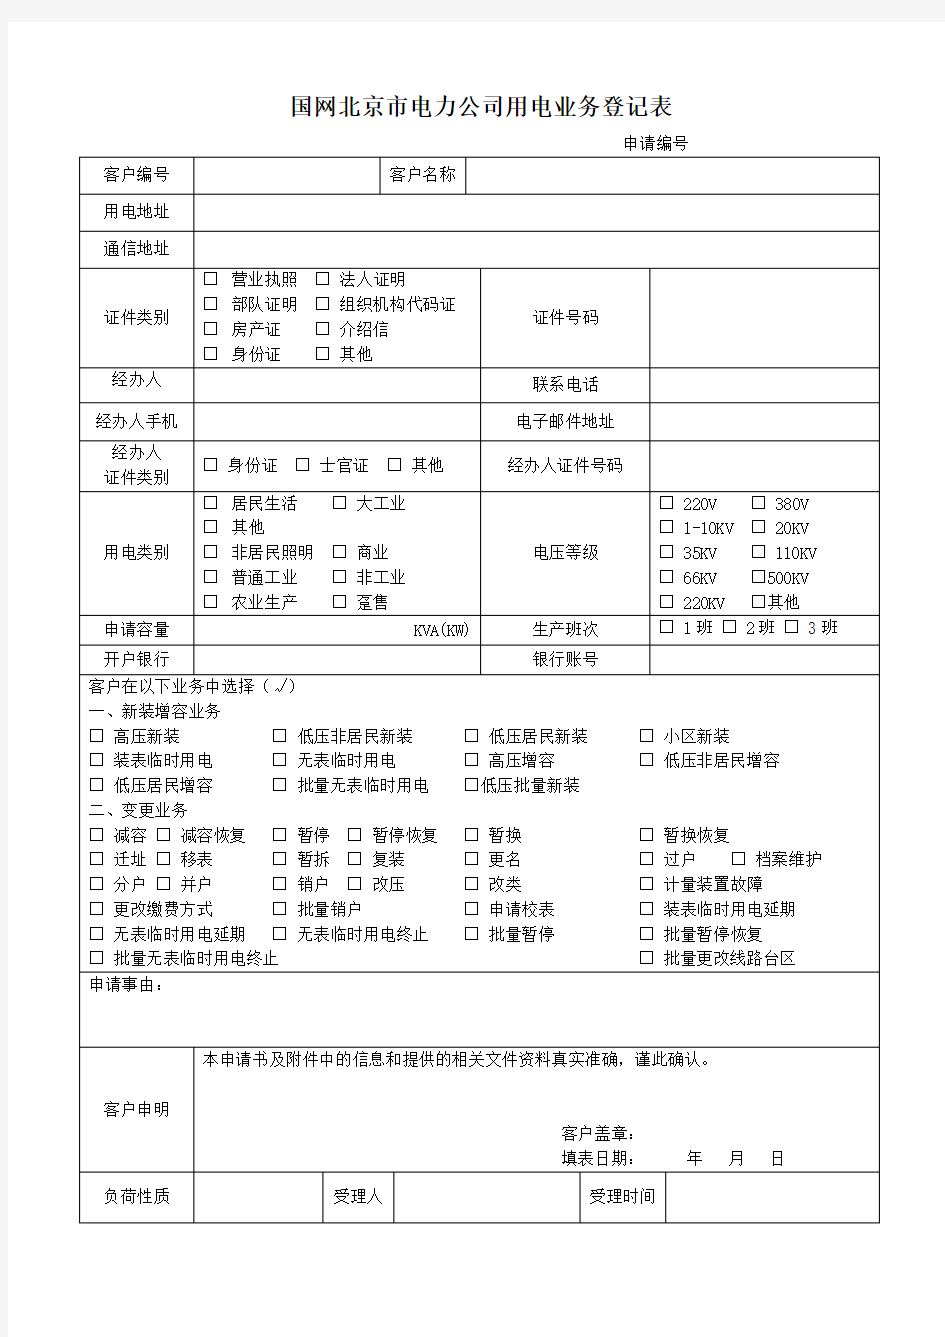 国网北京市电力公司用电业务登记表